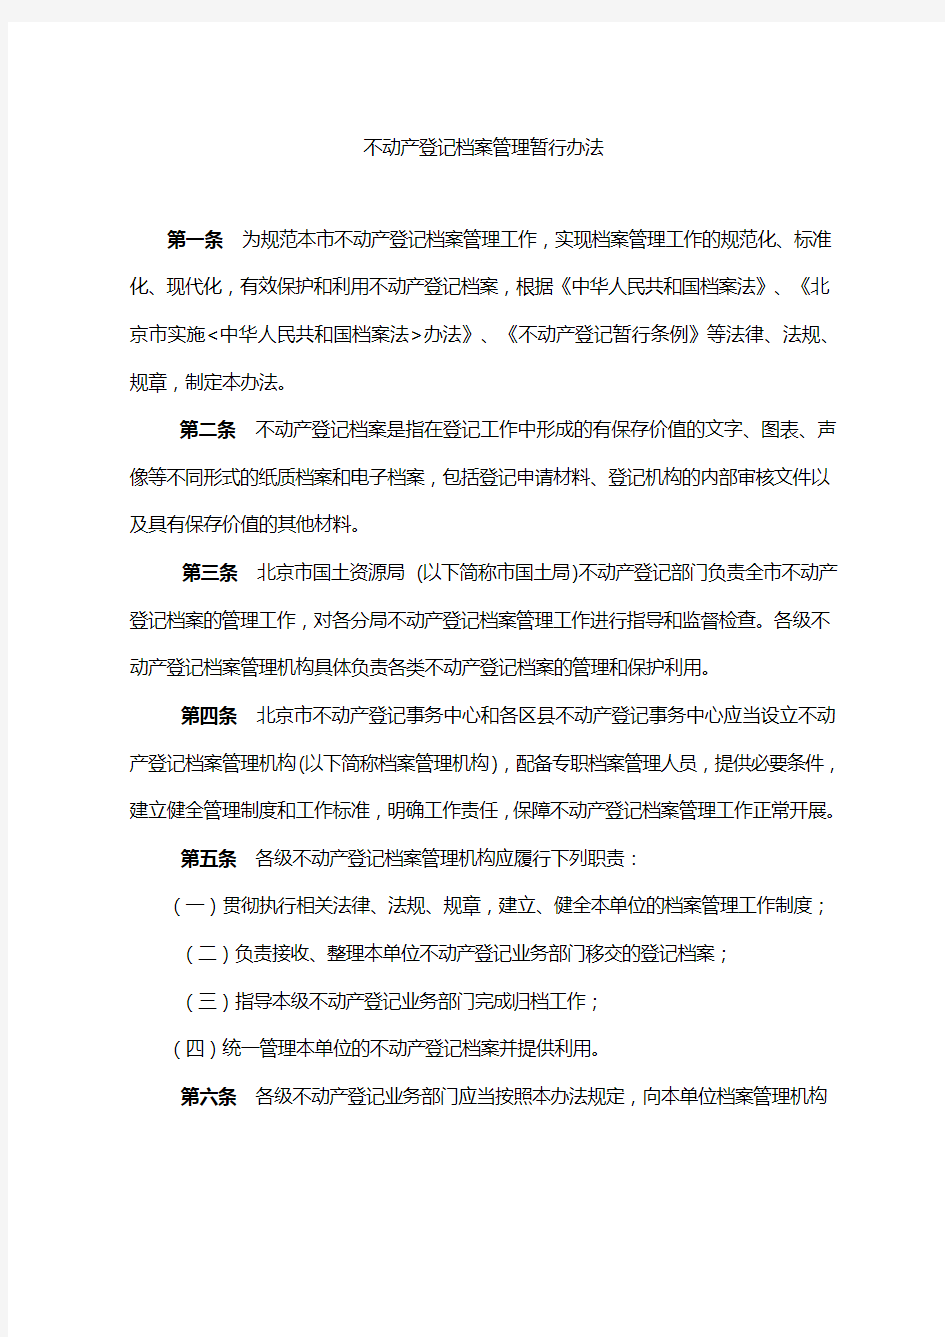 北京市不动产登记档案管理暂行办法